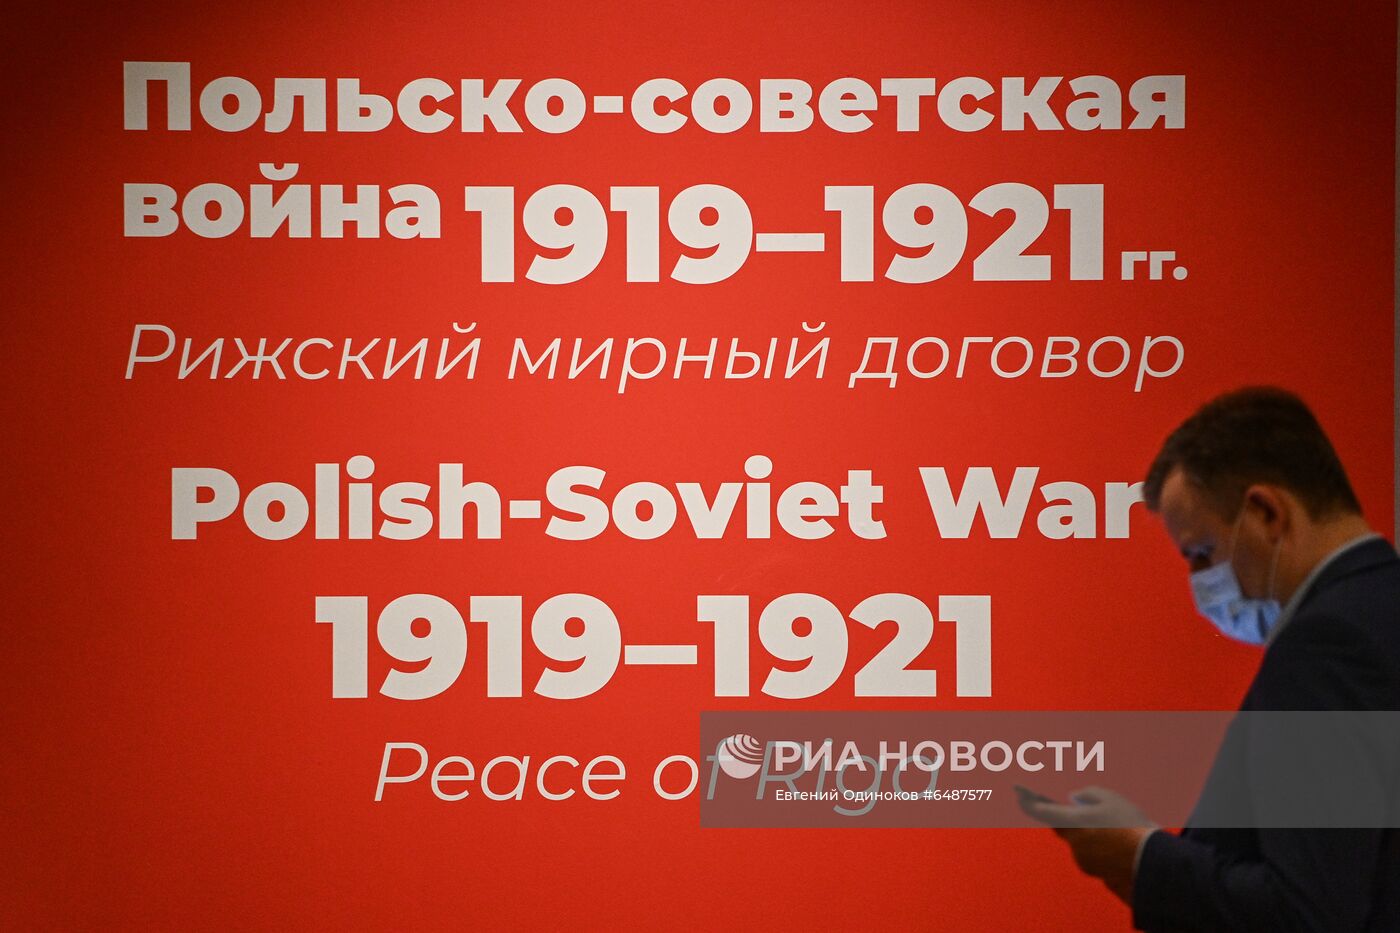 Выставка "Польско-советская война 1919-1921 гг. Рижский мирный договор"